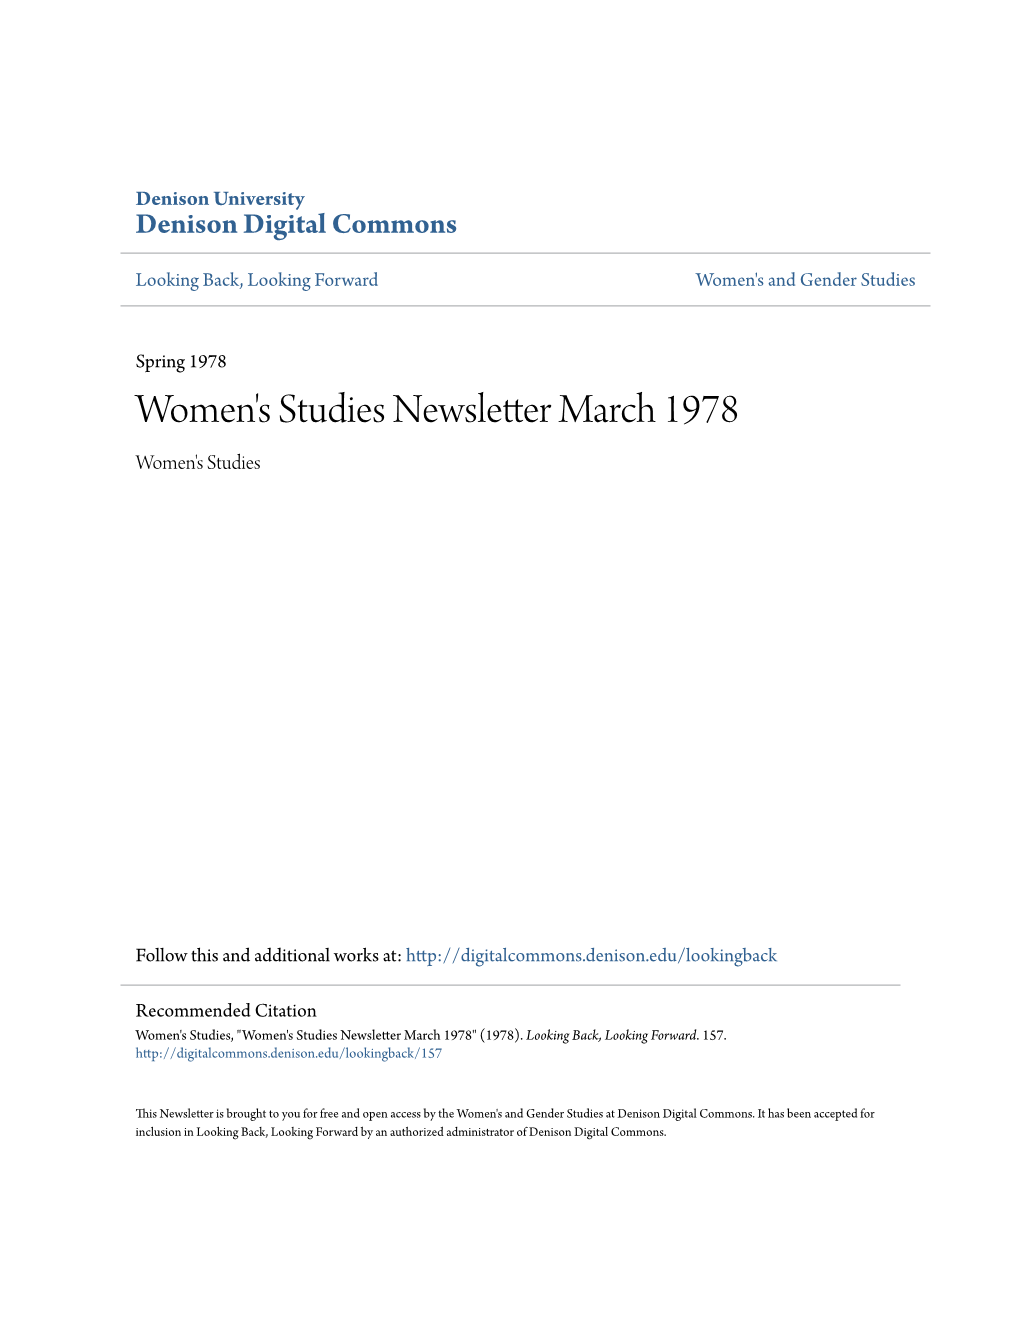 Women's Studies Newsletter March 1978 Women's Studies